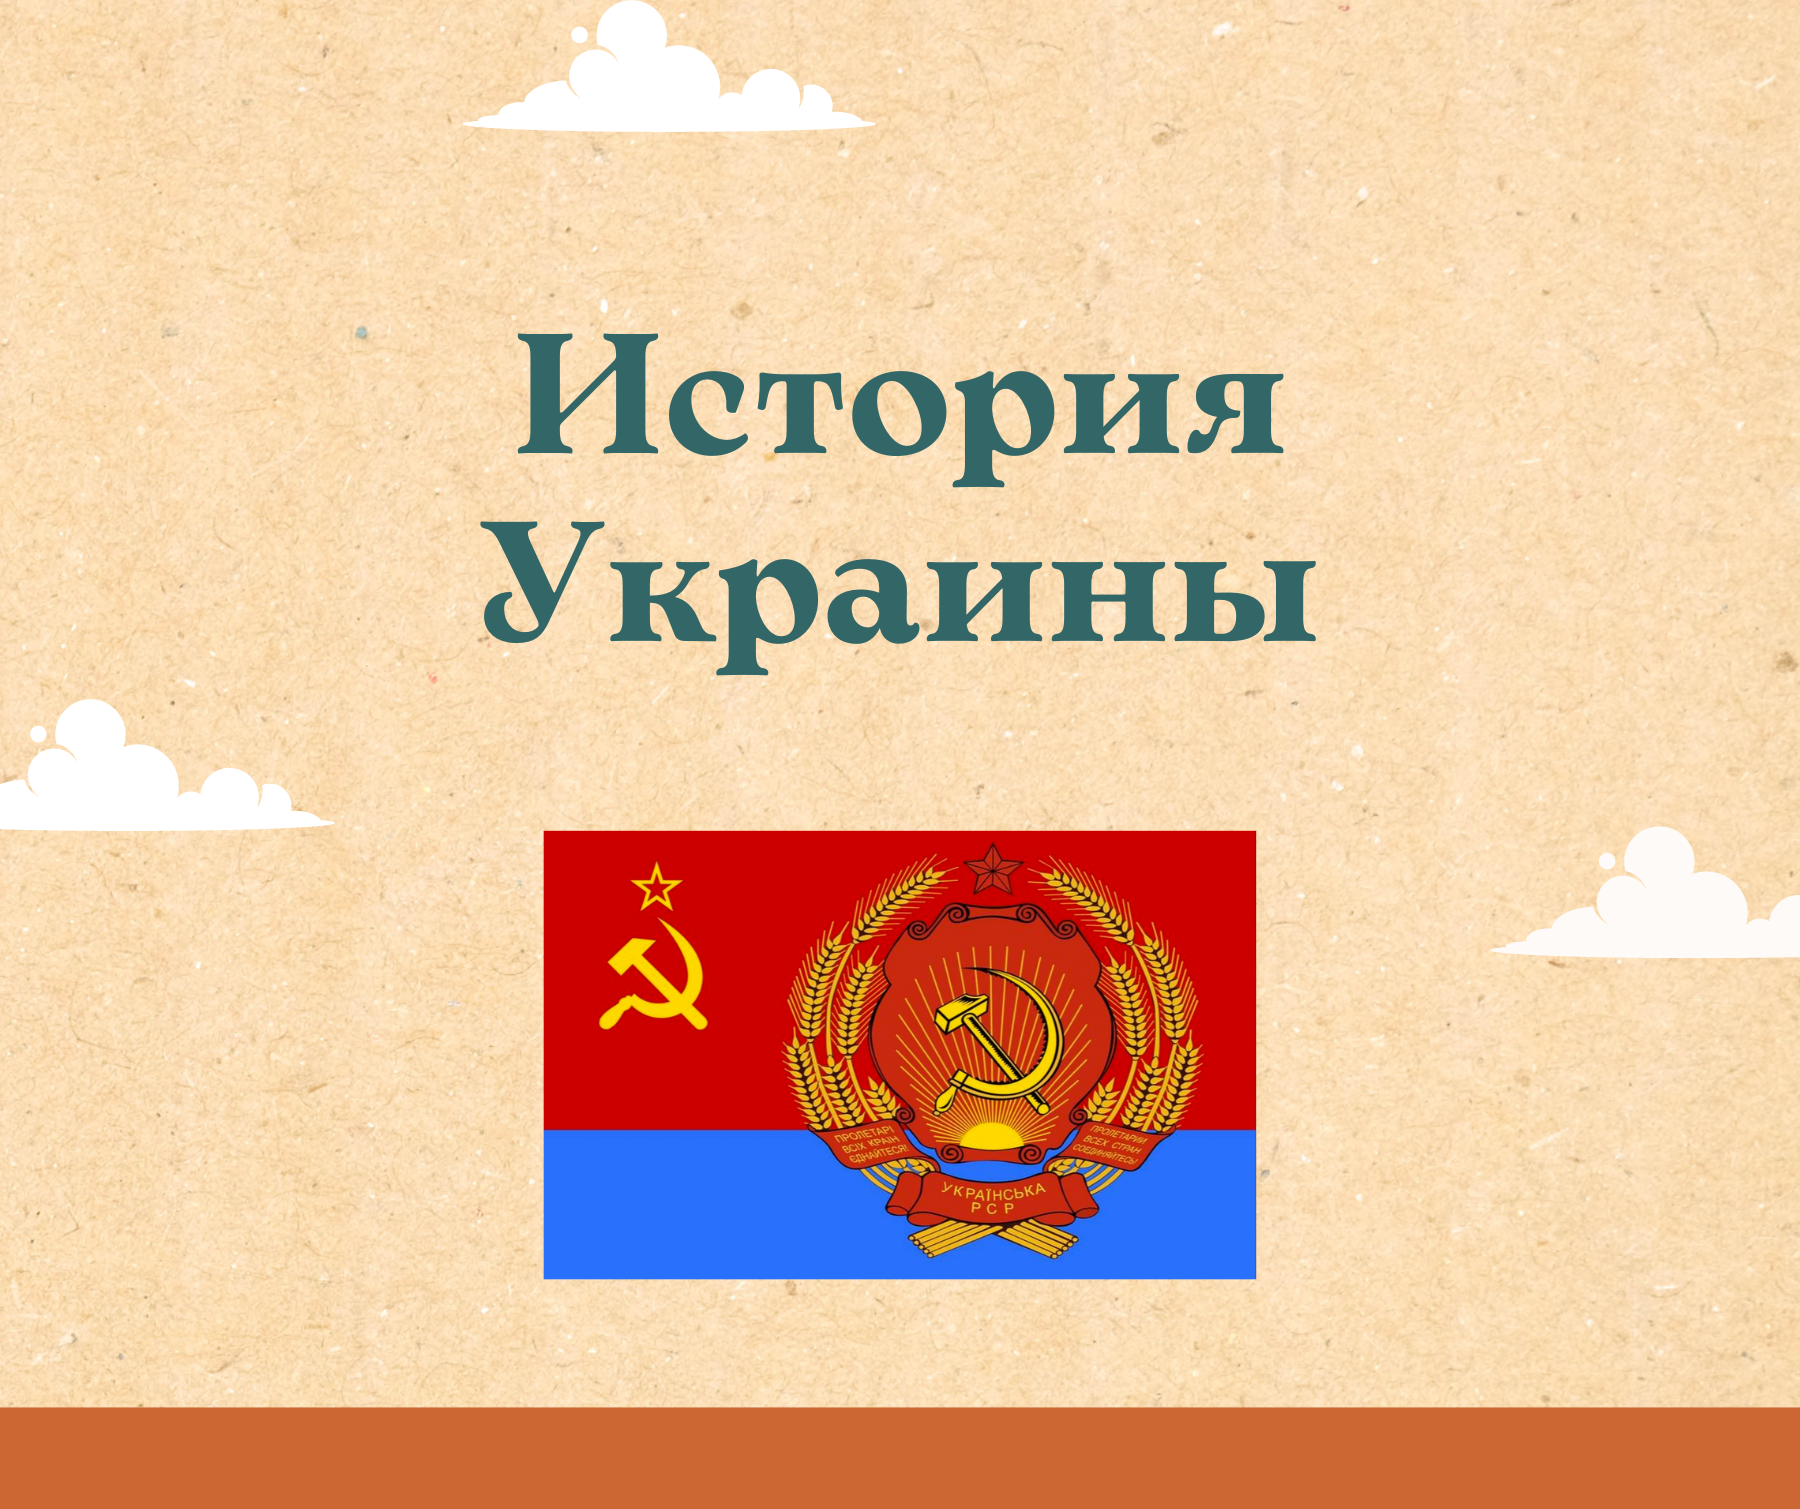 Статьи и монографии исторической тематики, посвященные регионам нынешней территории Украины